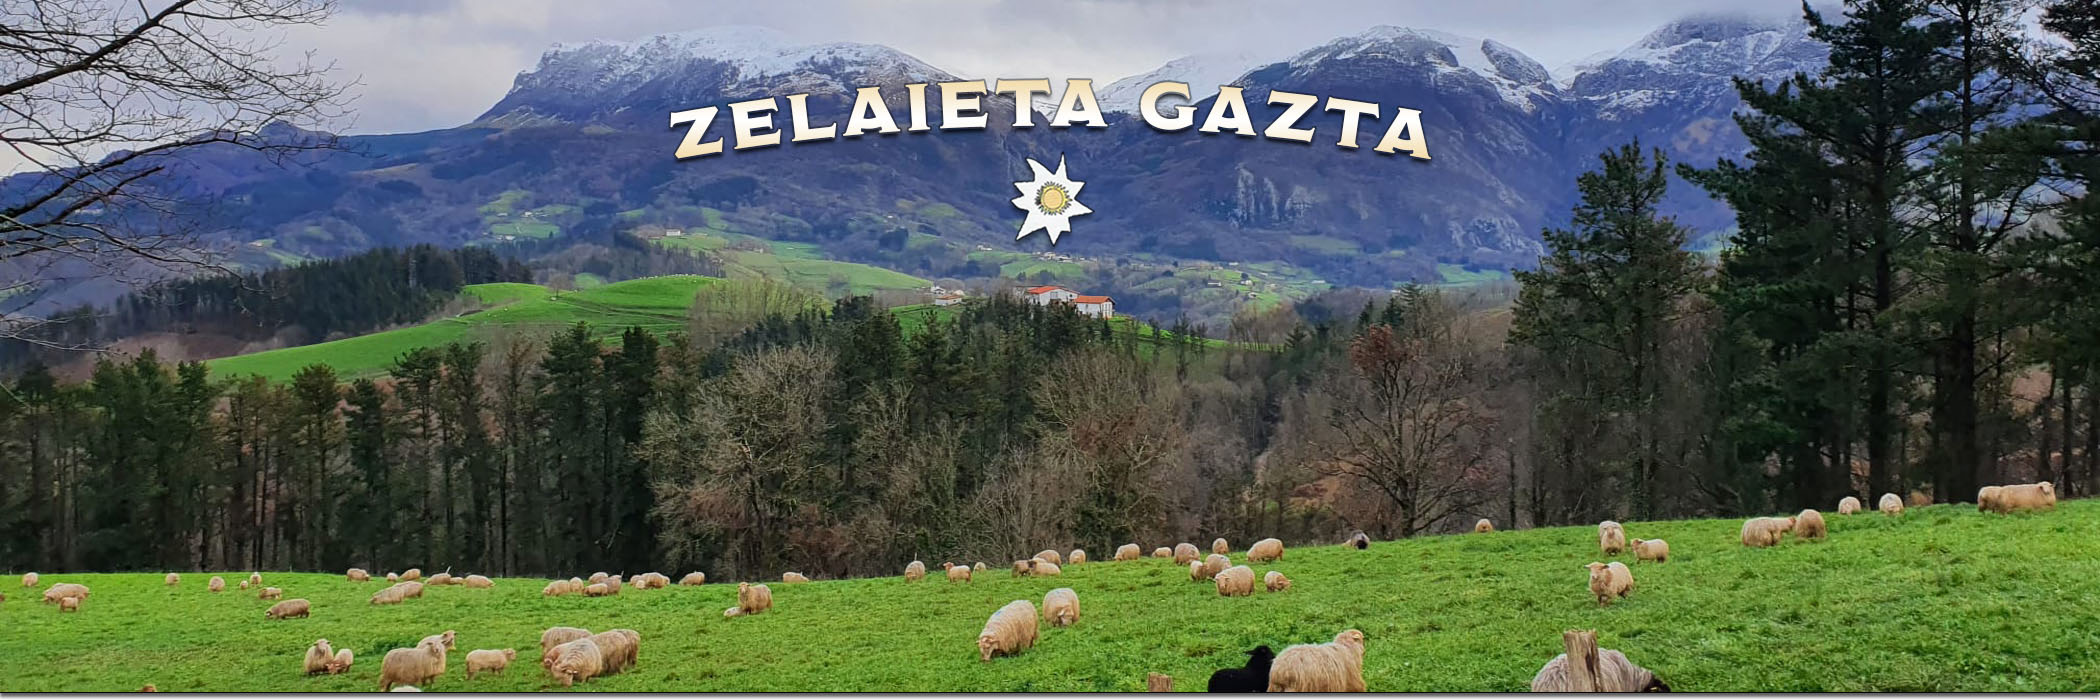 Zelaieta Gaztak - Queso de Denominación de Origen Idiazabal y Artzai Gazta, en Orendain (Gipuzkoa)